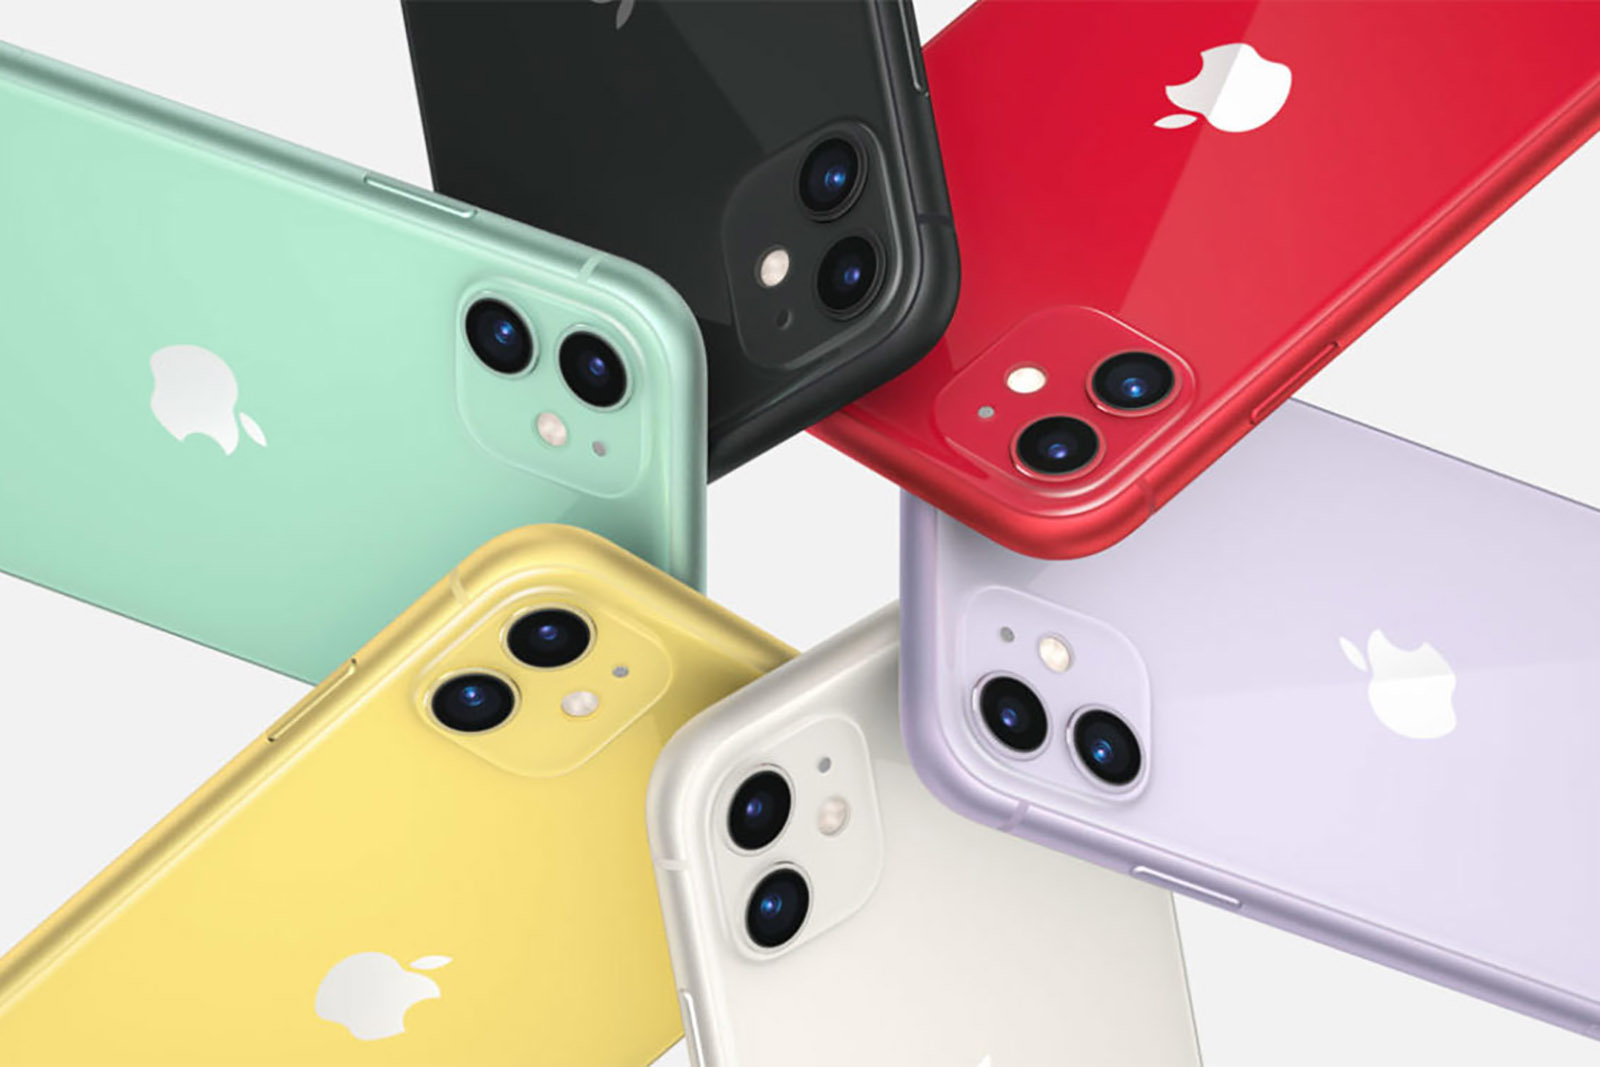 iPhone 11 Todas as novas cores Olhar mais de perto: verde, roxo, vermelho, amarelo, branco e preto